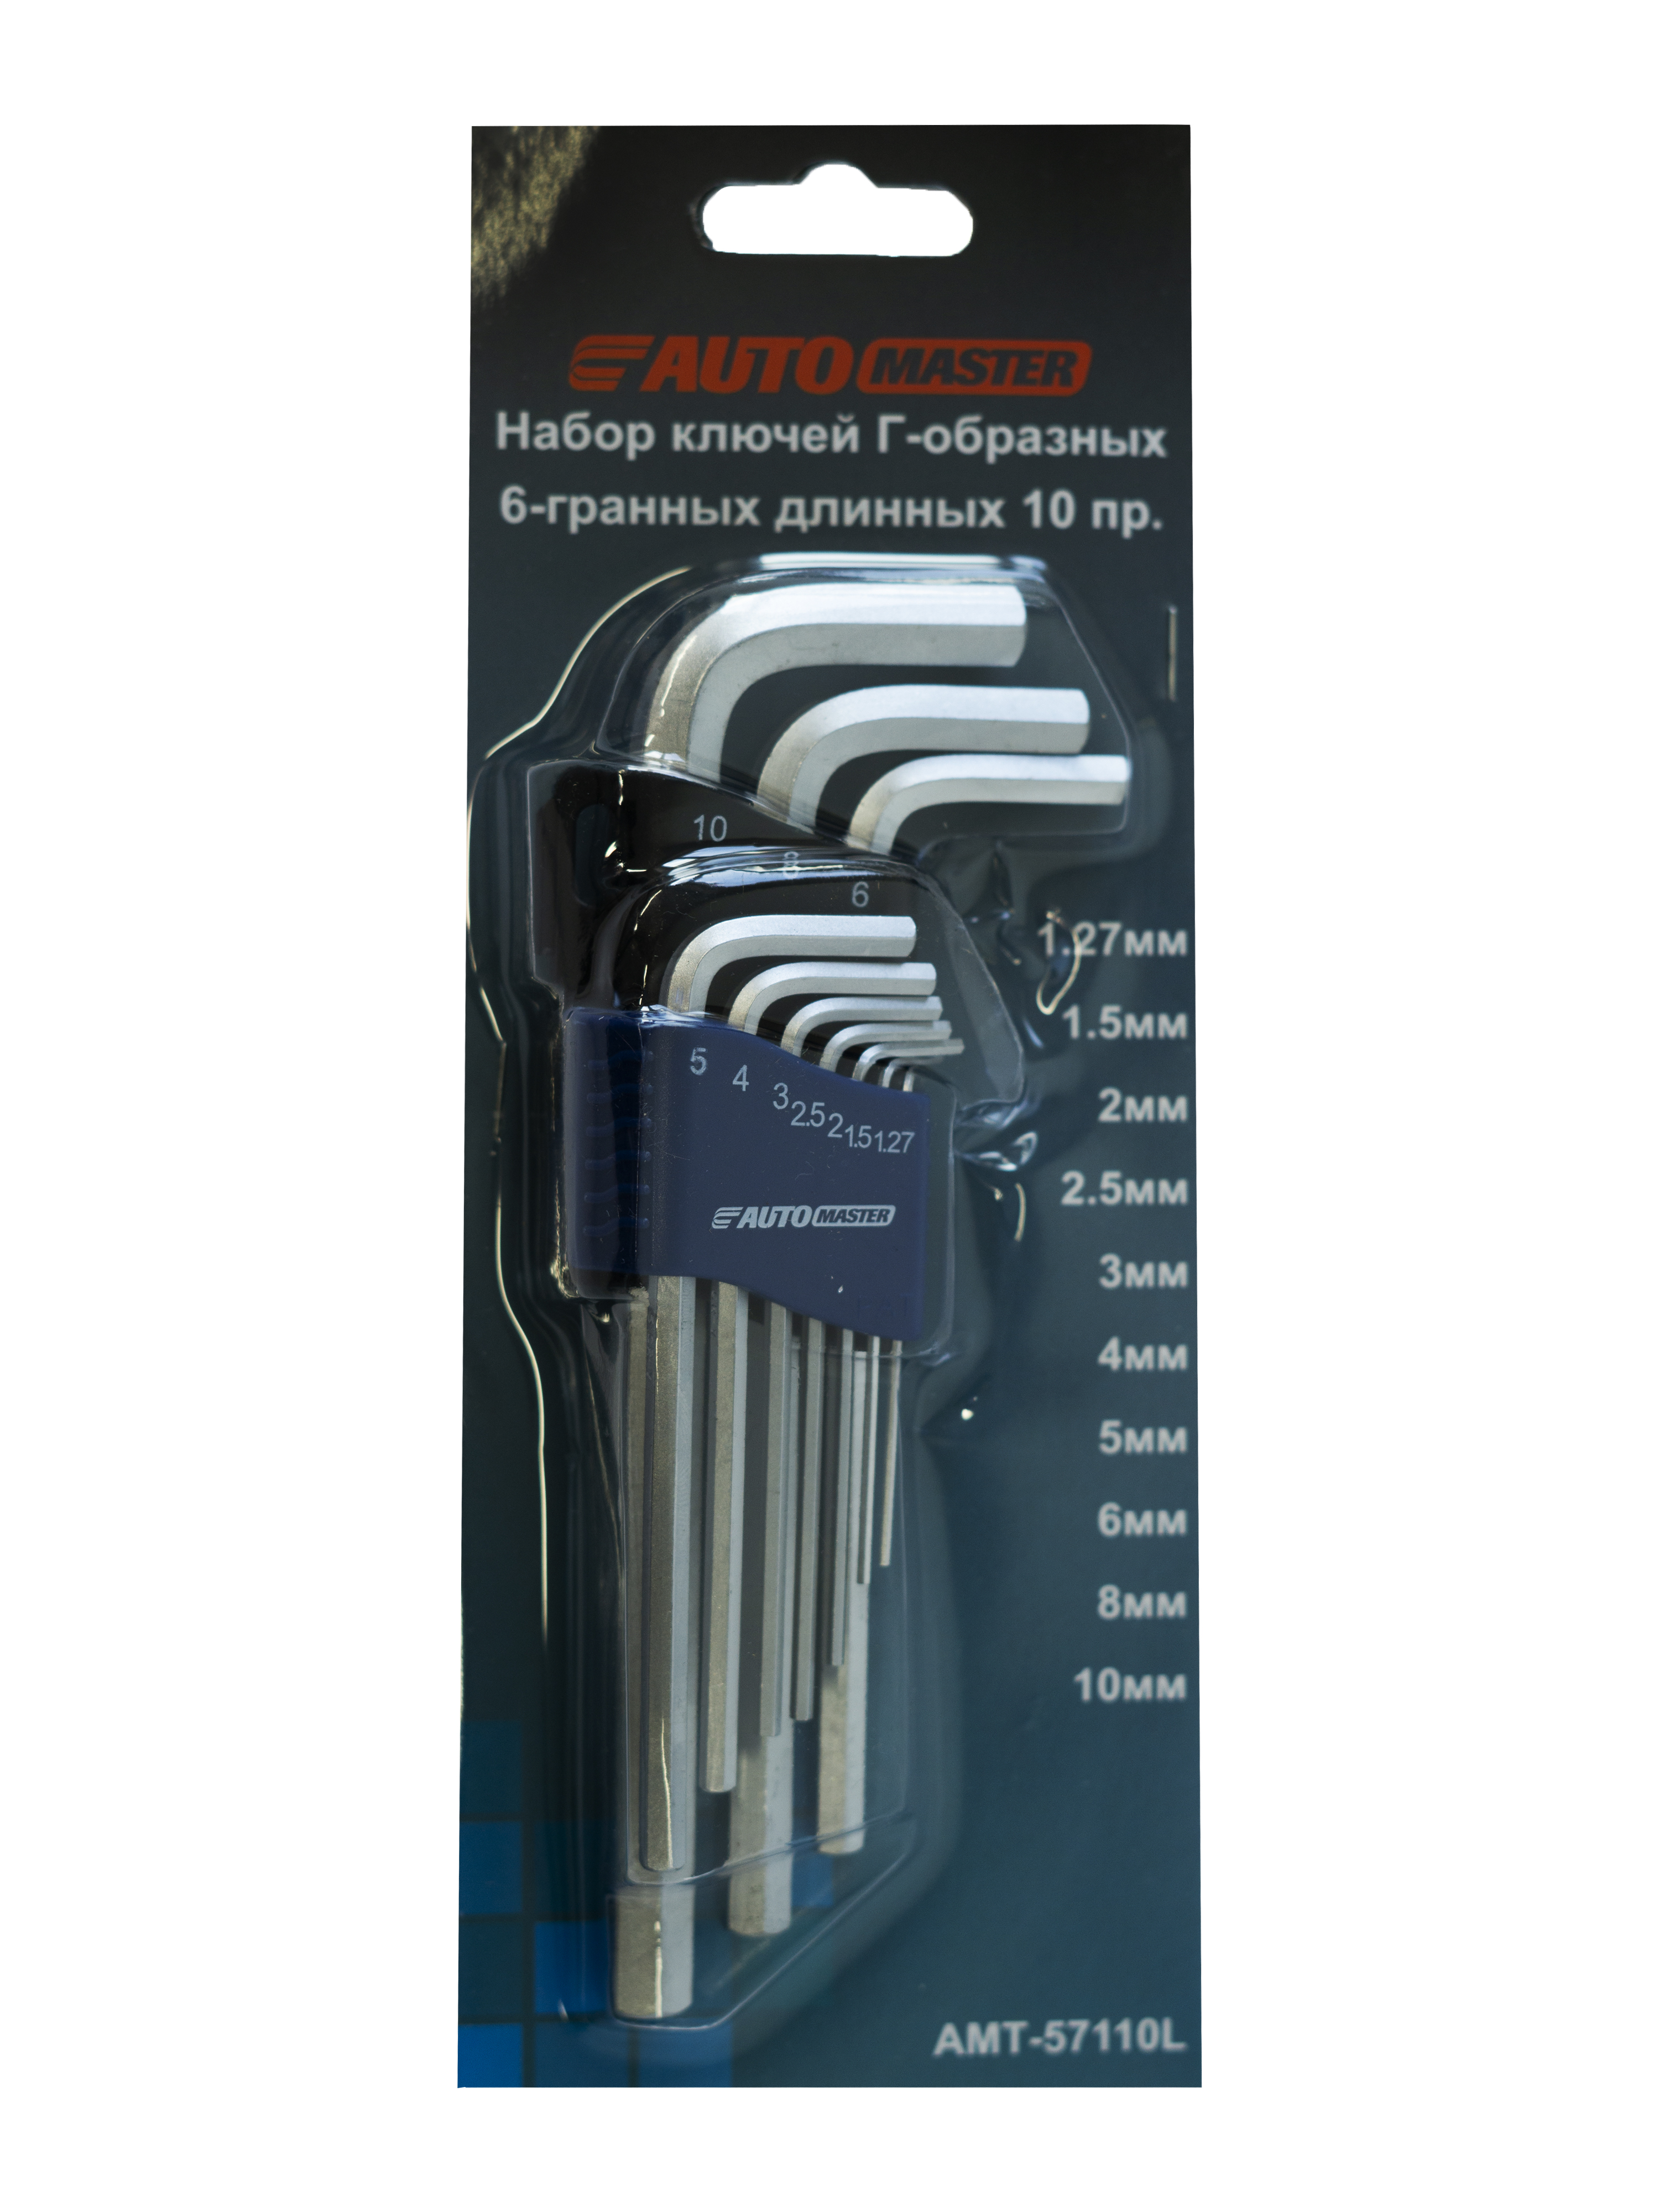 Набор ключей Automaster Г-образный 6-граней длинных 10 предметов 1,27-10 мм складной набор ключей шестигранников proskit